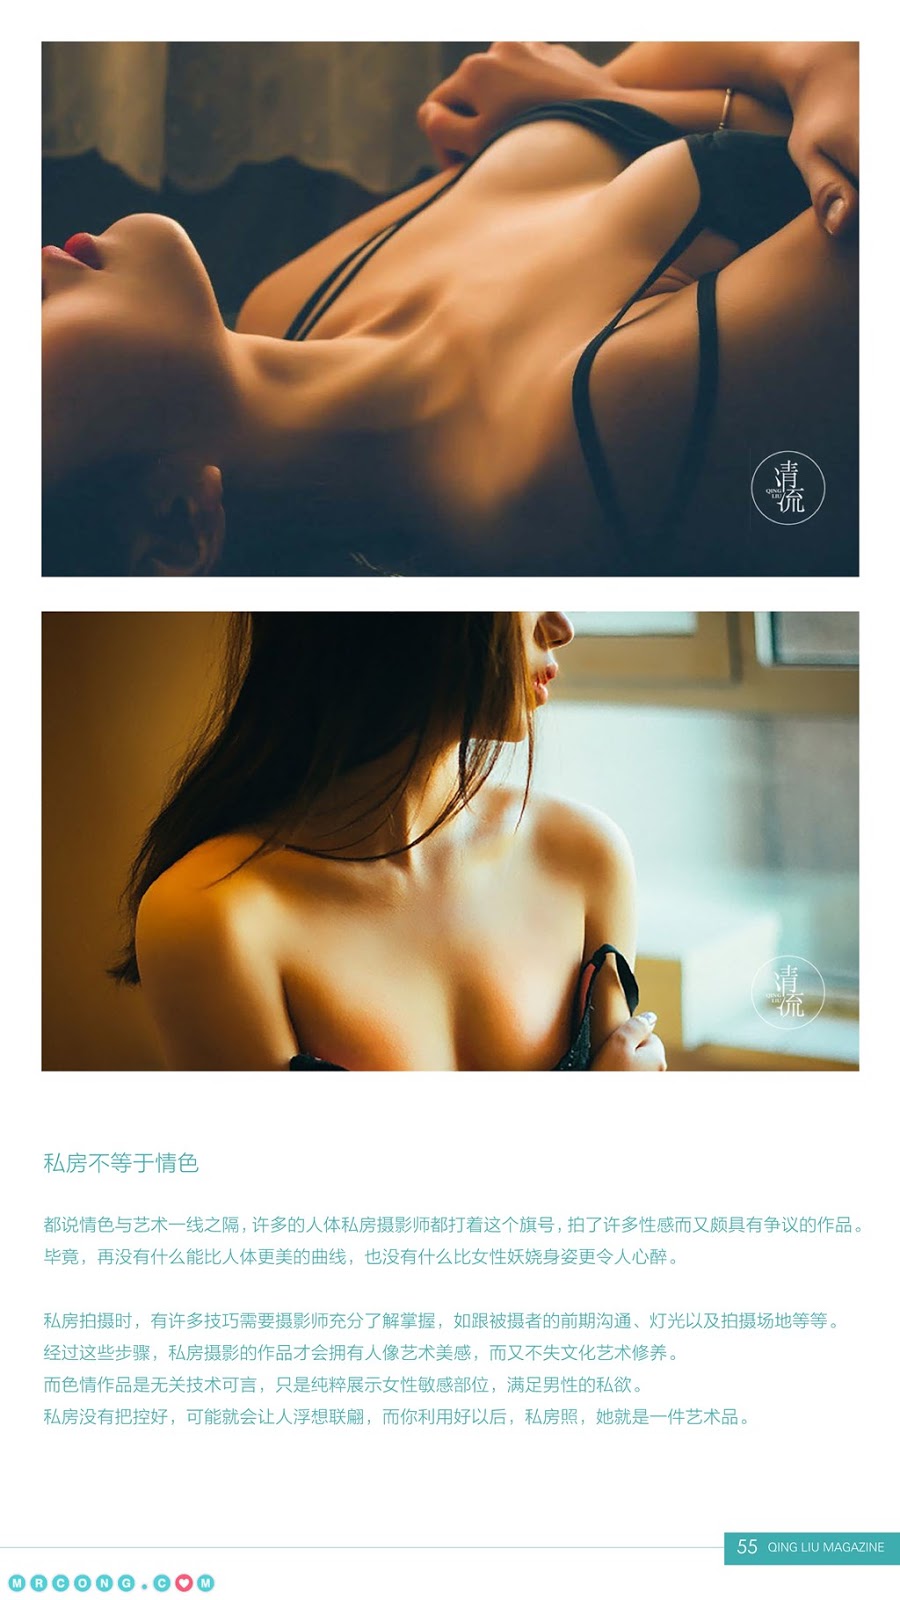 Qing Liu Magazine 2017-09-01 (84 pictures)